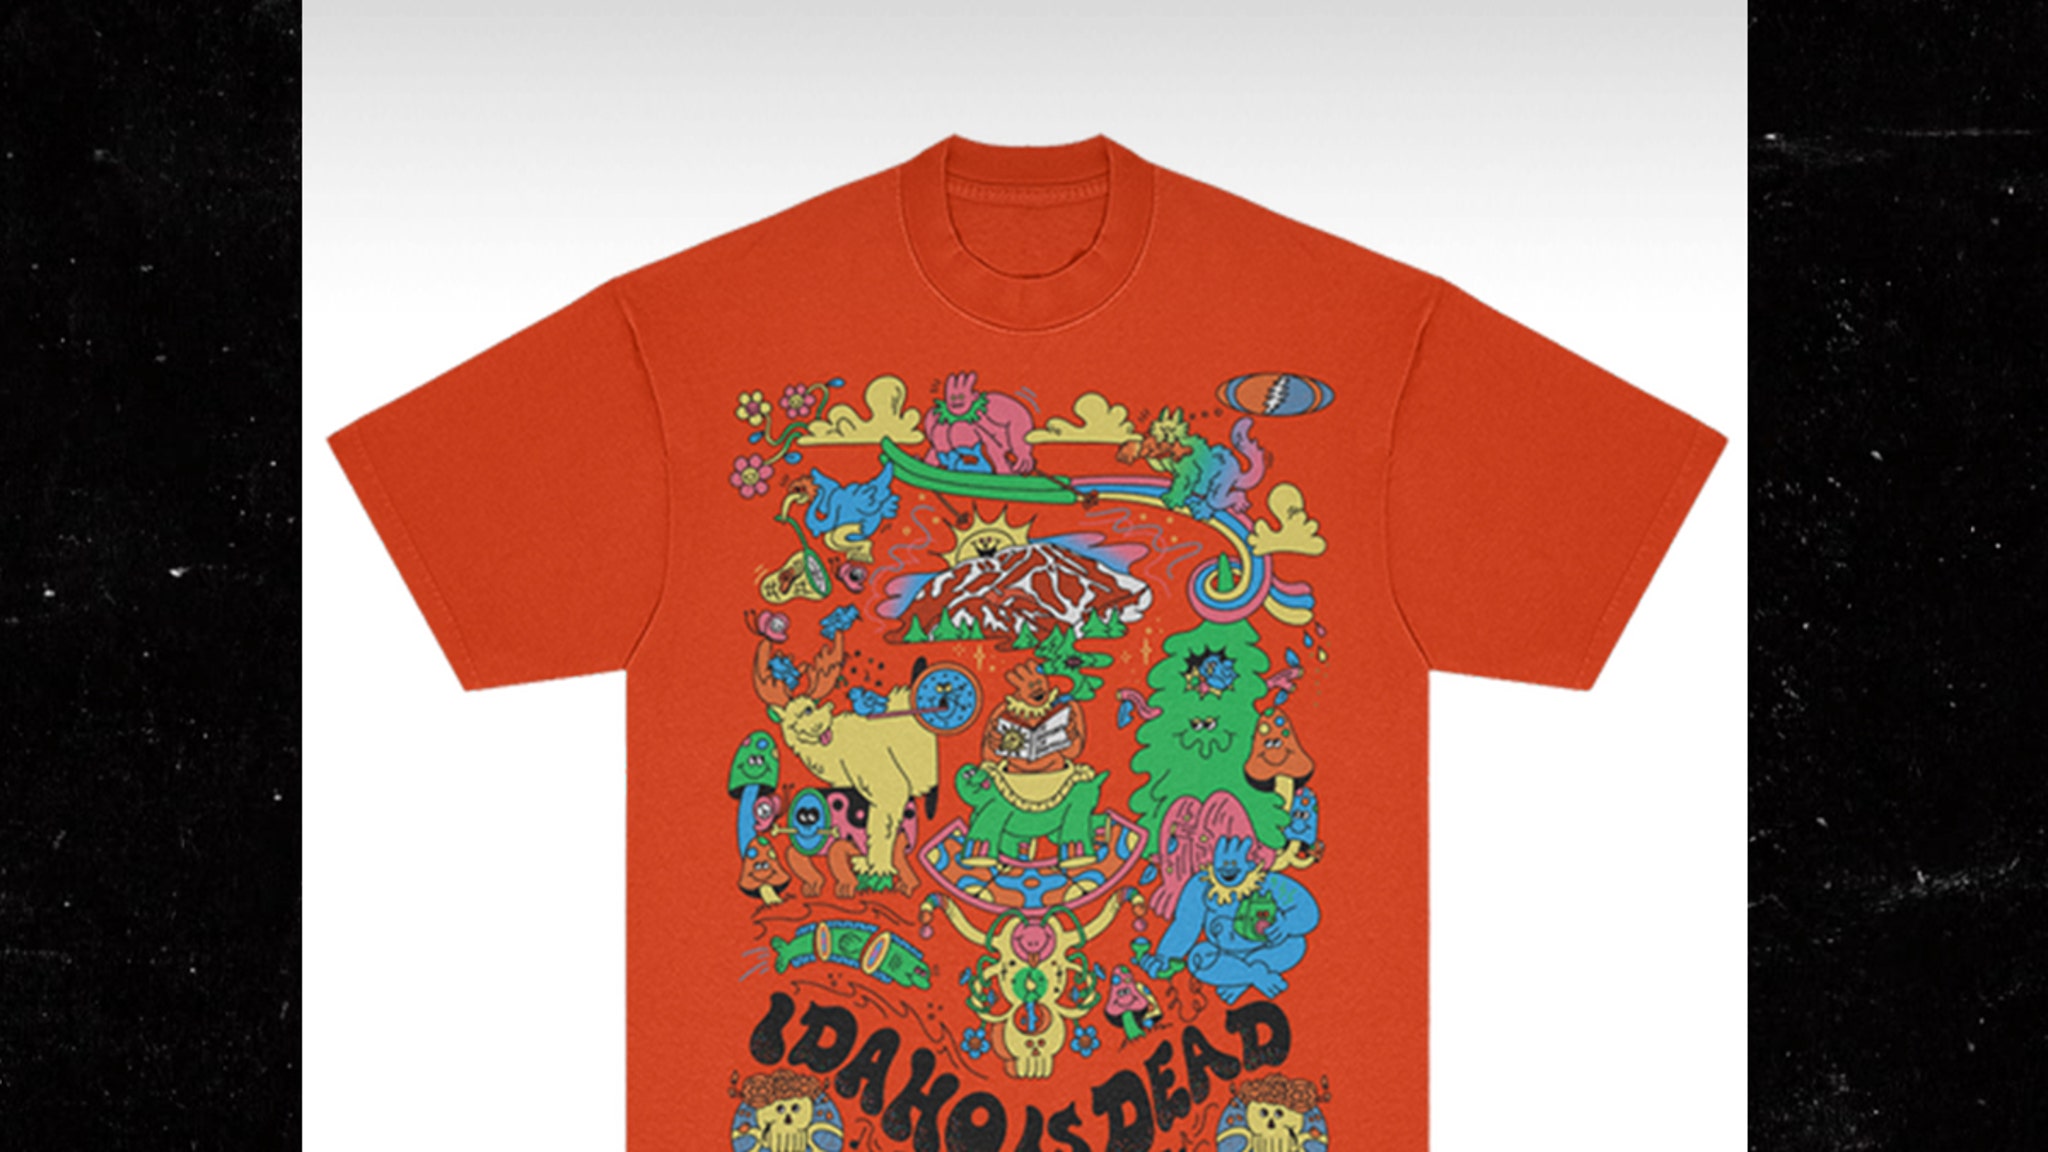 Grateful Dead verkauft „Idaho is Dead“-T-Shirts nach College-Morden in Idaho